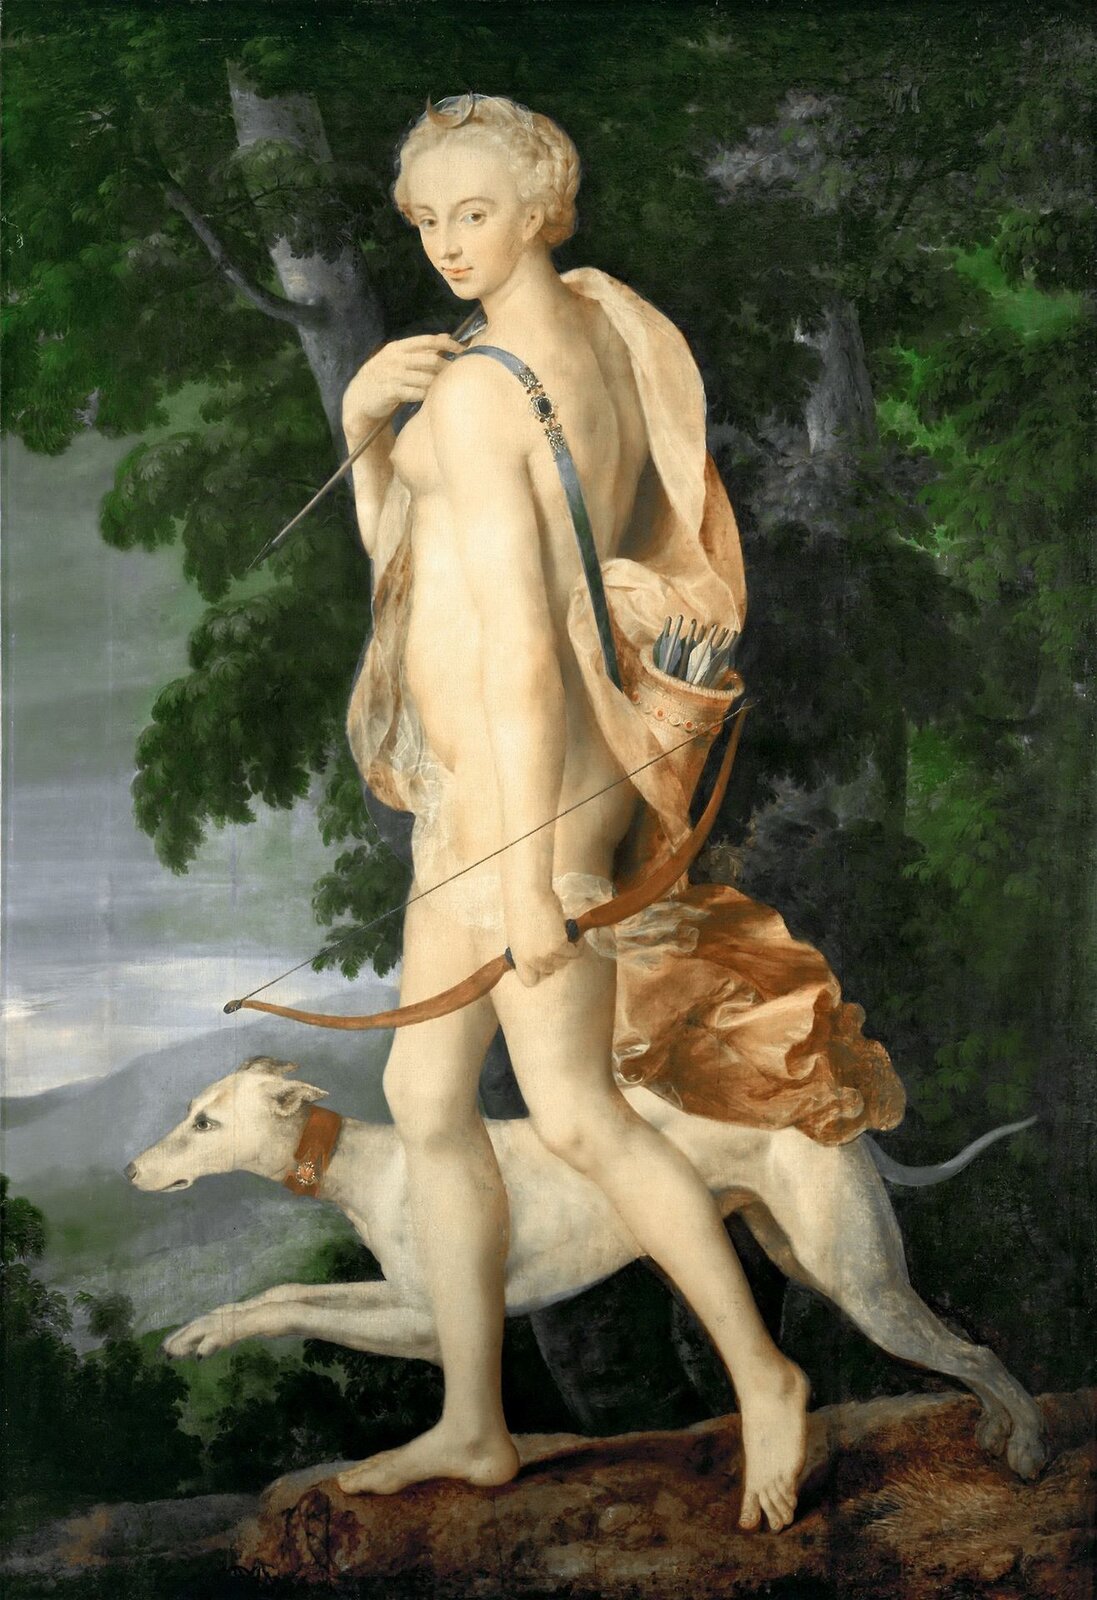 Obraz autorstwa  Luca Penniego pod tytułem „Diana łowczyni” przedstawia młodą nagą kobietę wędrującą wraz ze swoim psem przez las. Diana ma długie jasne włosy spięte w kok, na jej plecach widoczny jest kołczan pełen strzał. W jednej dłoni trzyma łuk, a w drugiej strzałę. Ciało kobiety przepasane jest pomarańczowym materiałem. U jej boku widoczny jest pies myśliwski o białym umaszczeniu. W tle widoczny jest las i góry. 